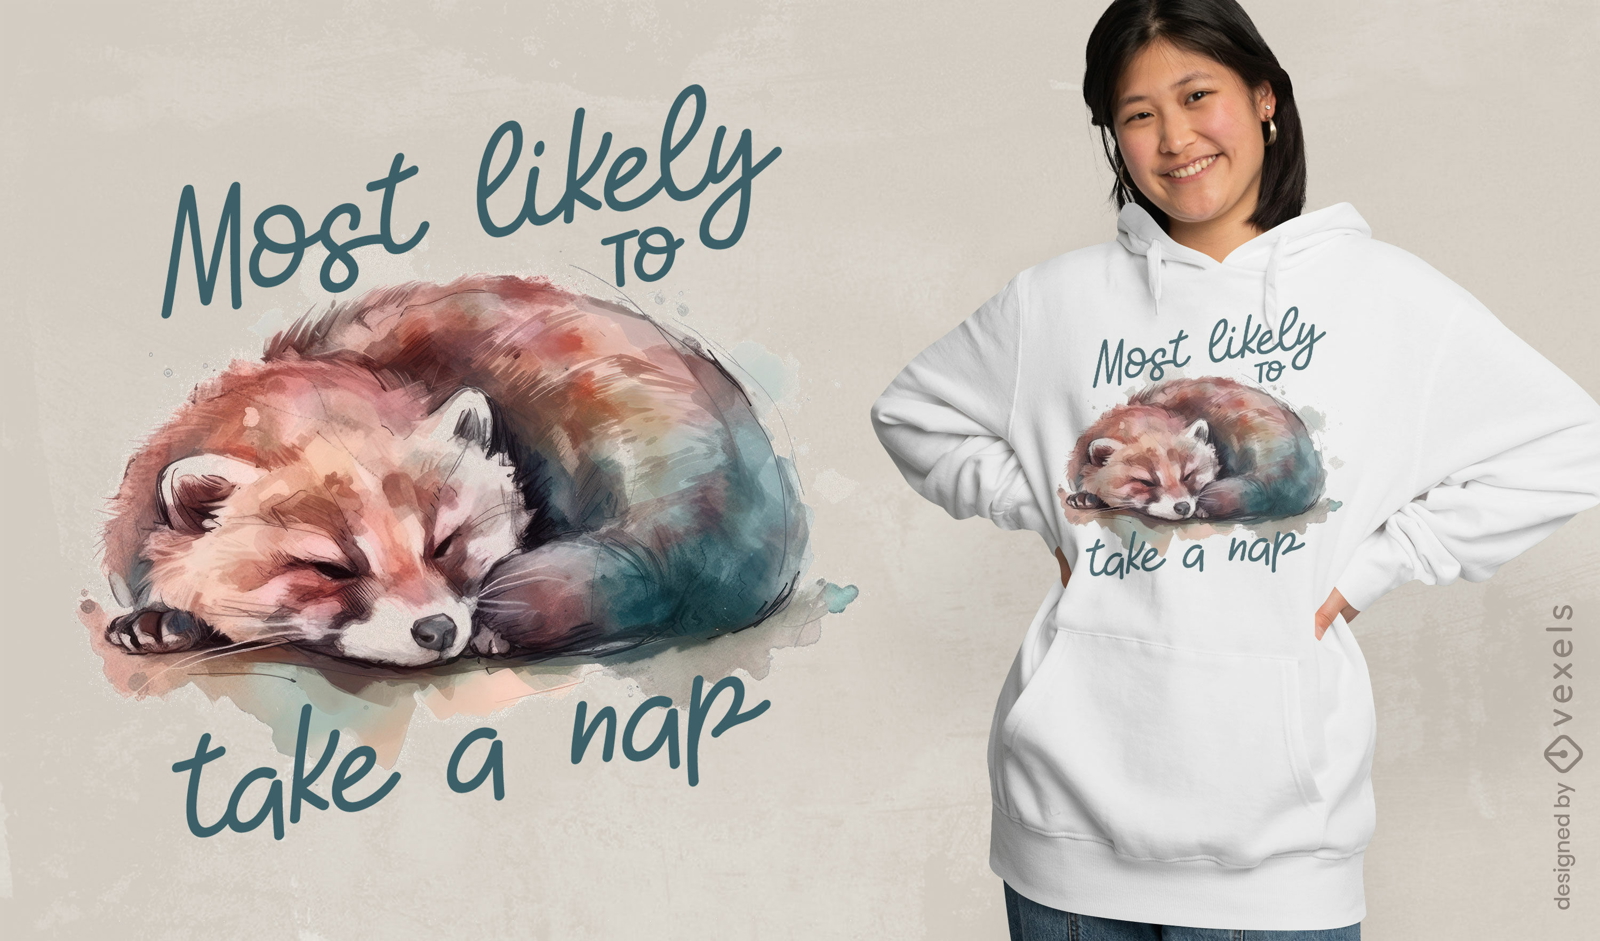 Red panda taking a nap t-shirt design